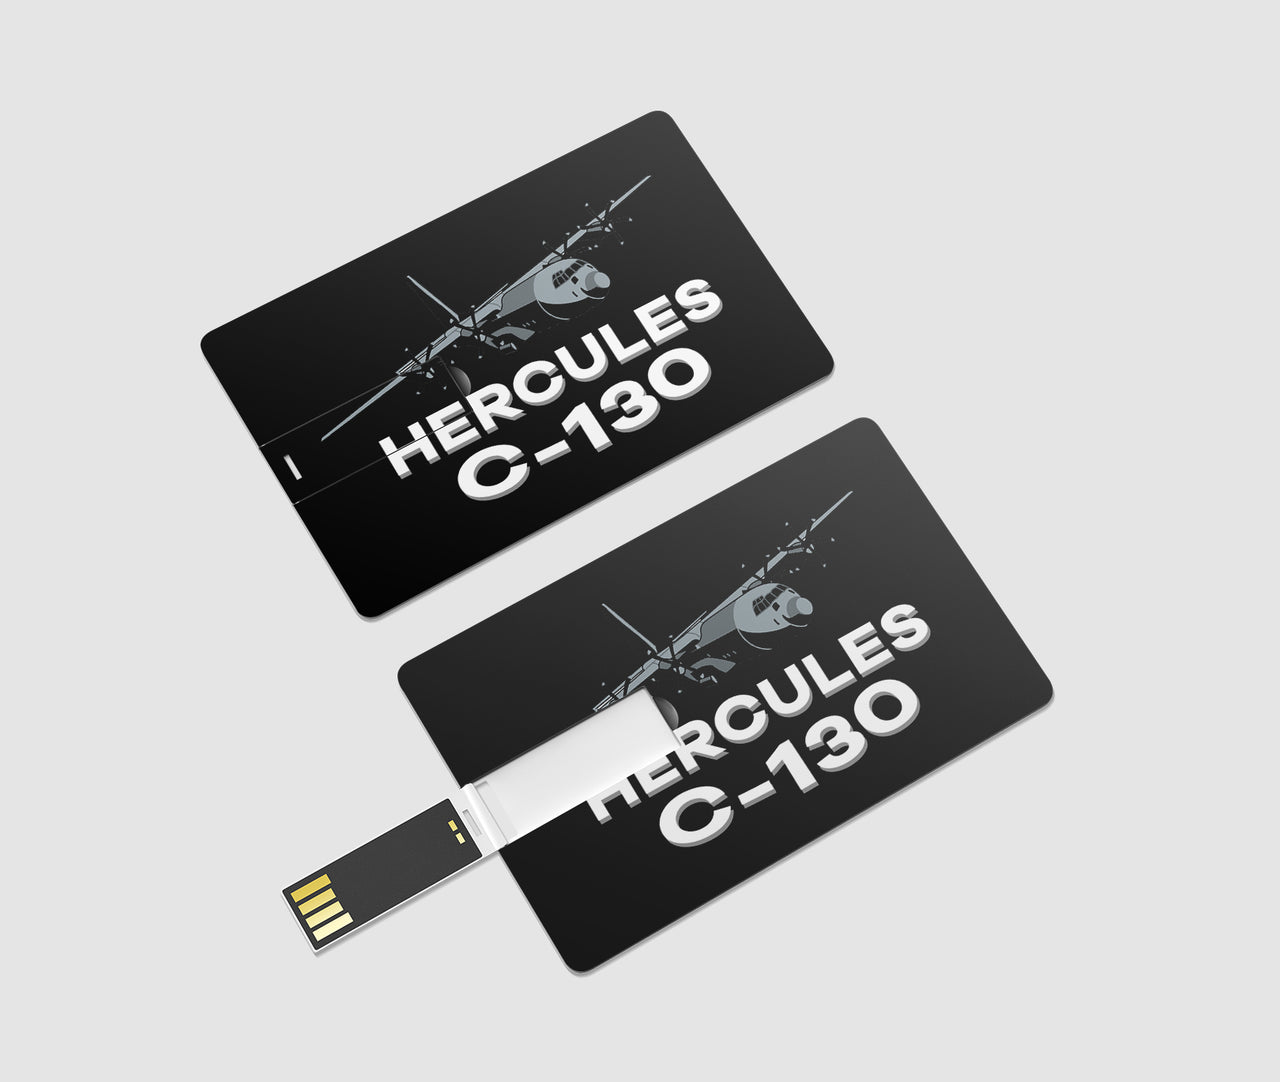 The Hercules C130 Designed USB Cards